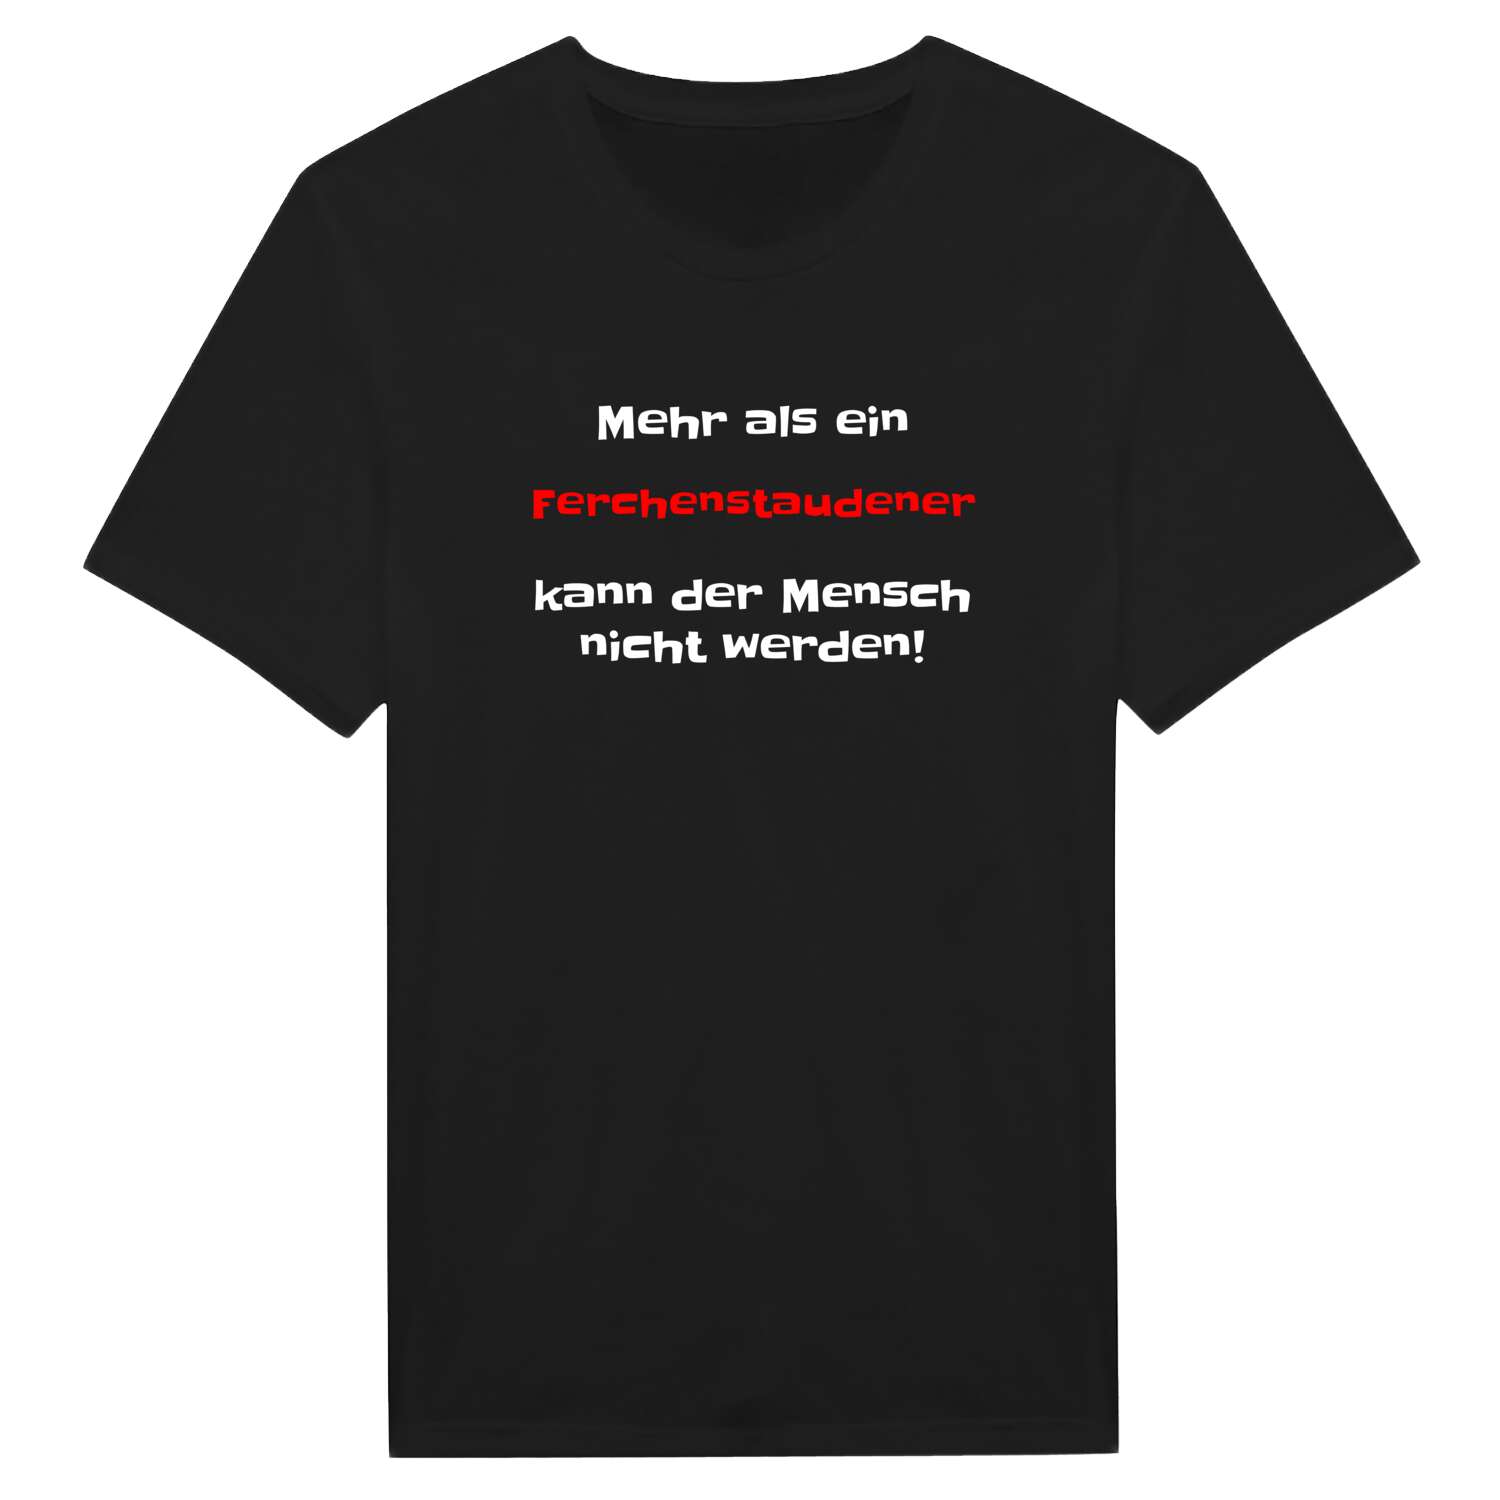 Ferchenstauden T-Shirt »Mehr als ein«